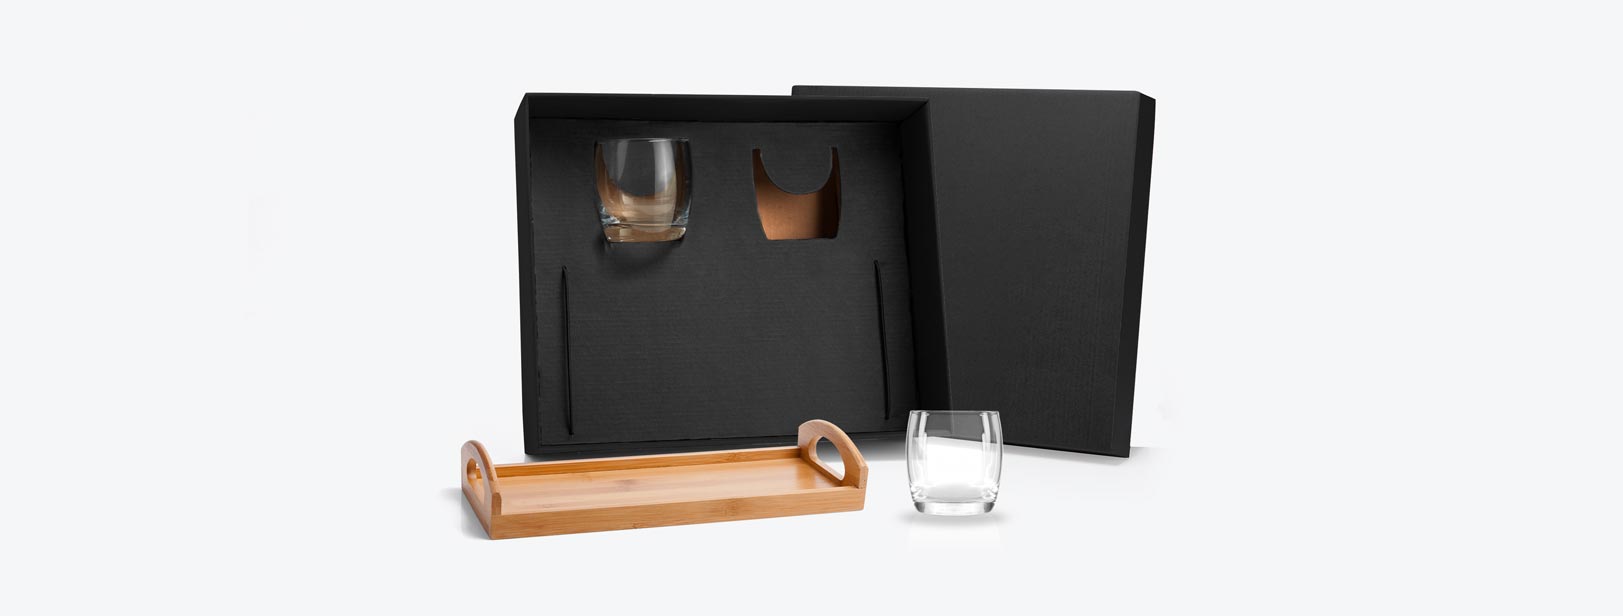 Kit Whisky; Conta com dois copos em vidro; Bandeja em Bambu. Estão perfeitamente acomodados em uma caixa para presentear.